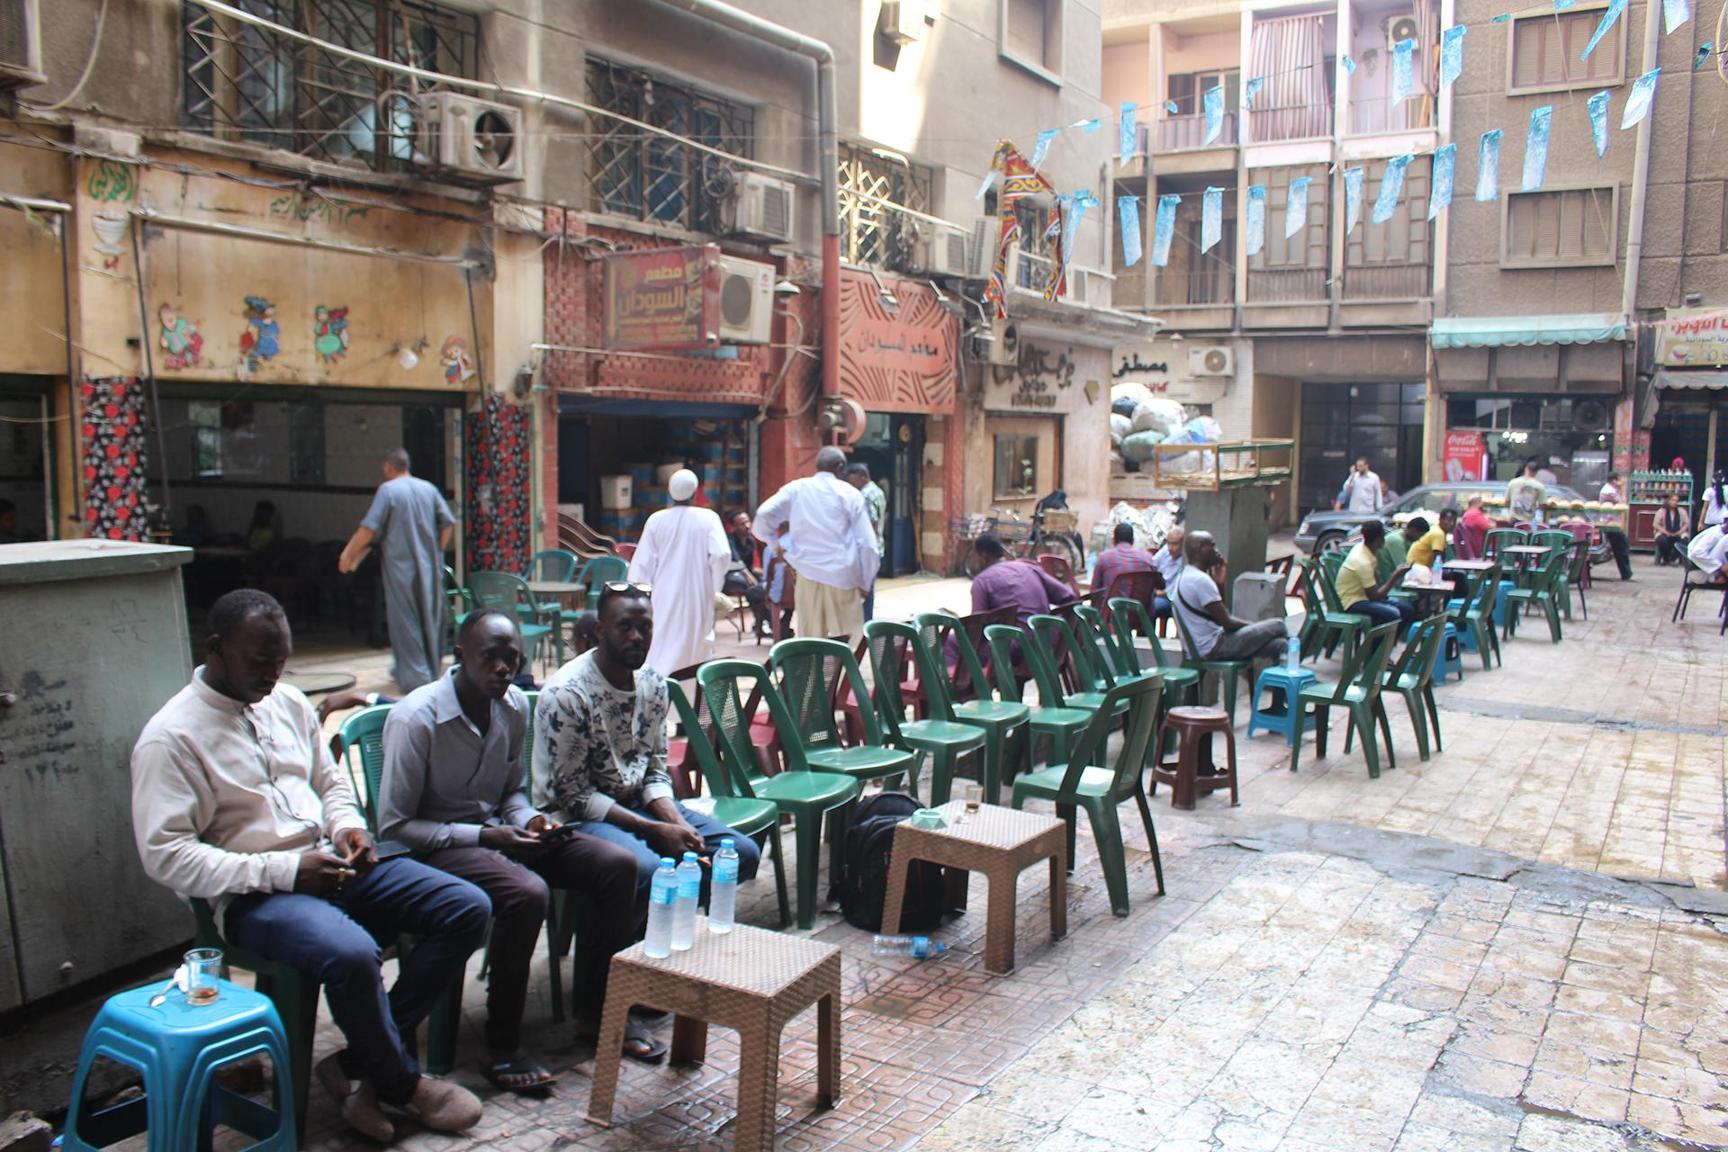 تداعي علل اللجوء؛ تساؤلات حول أسباب وآثار تقنين أوضاع السودانيين بمصر